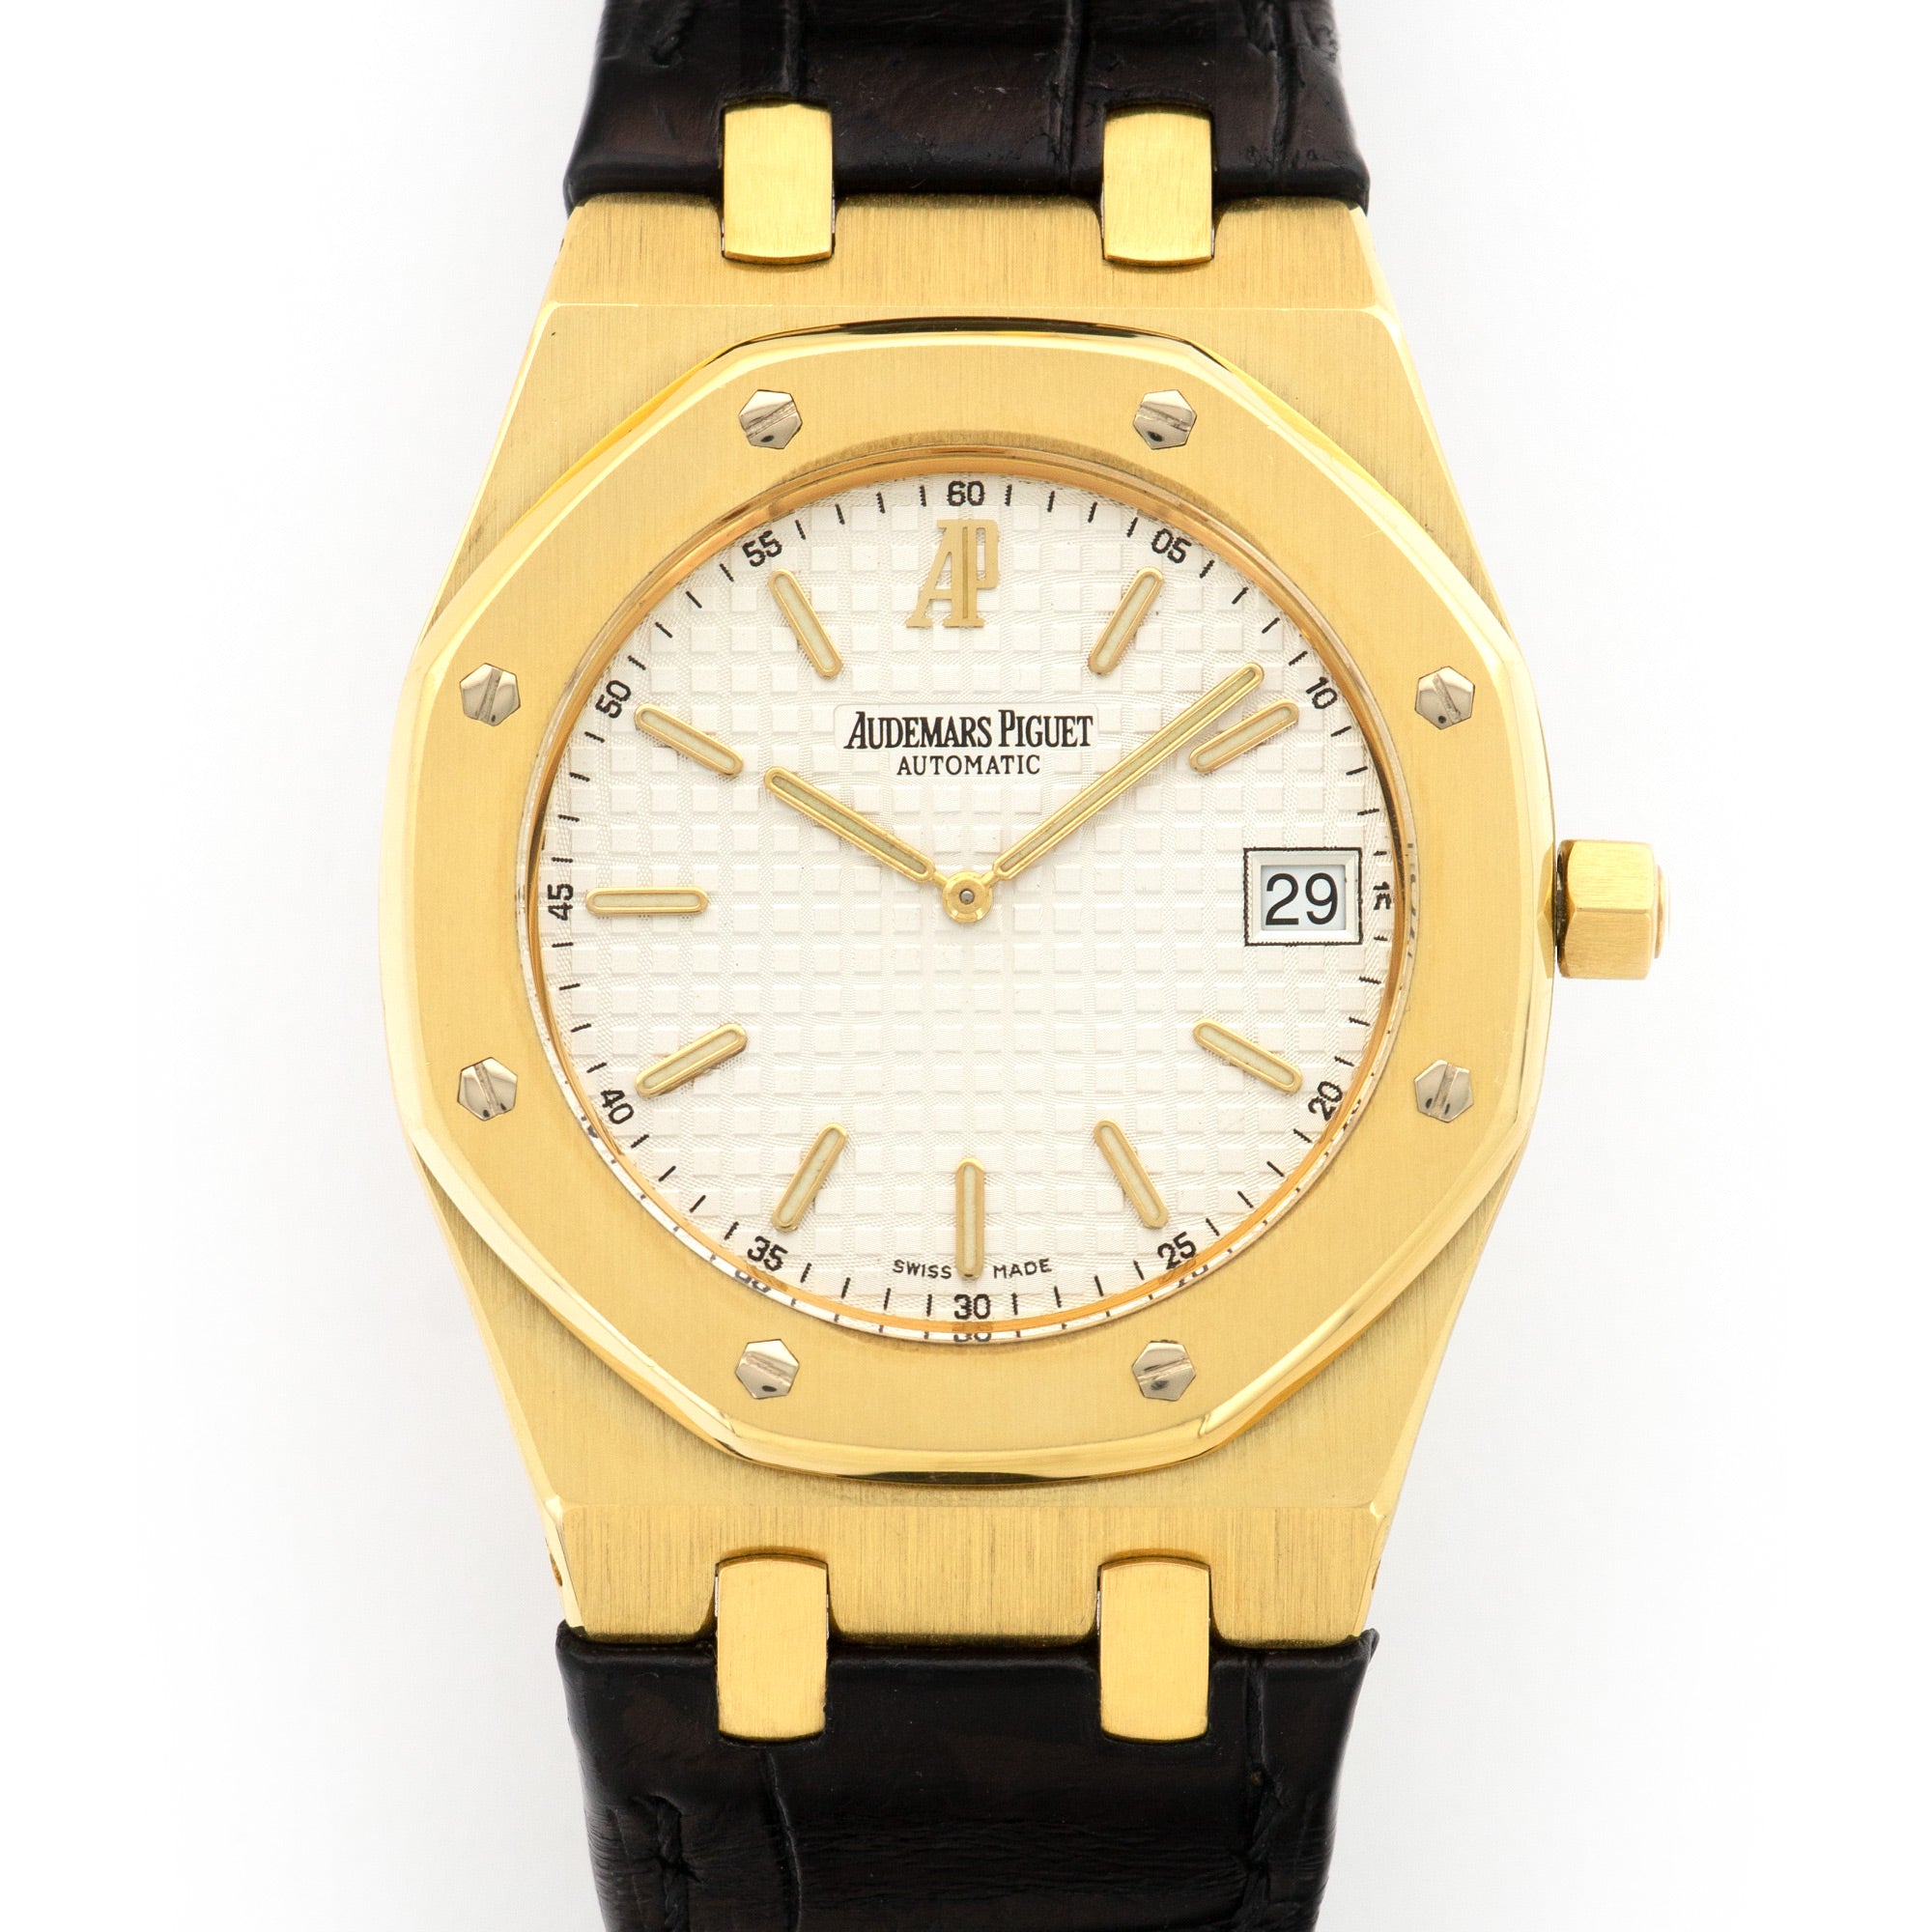 Audemars Piguet - Audemars Piguet Yellow Gold Royal Oak Ultra-Thin Watch Ref. 15202 - The Keystone Watches